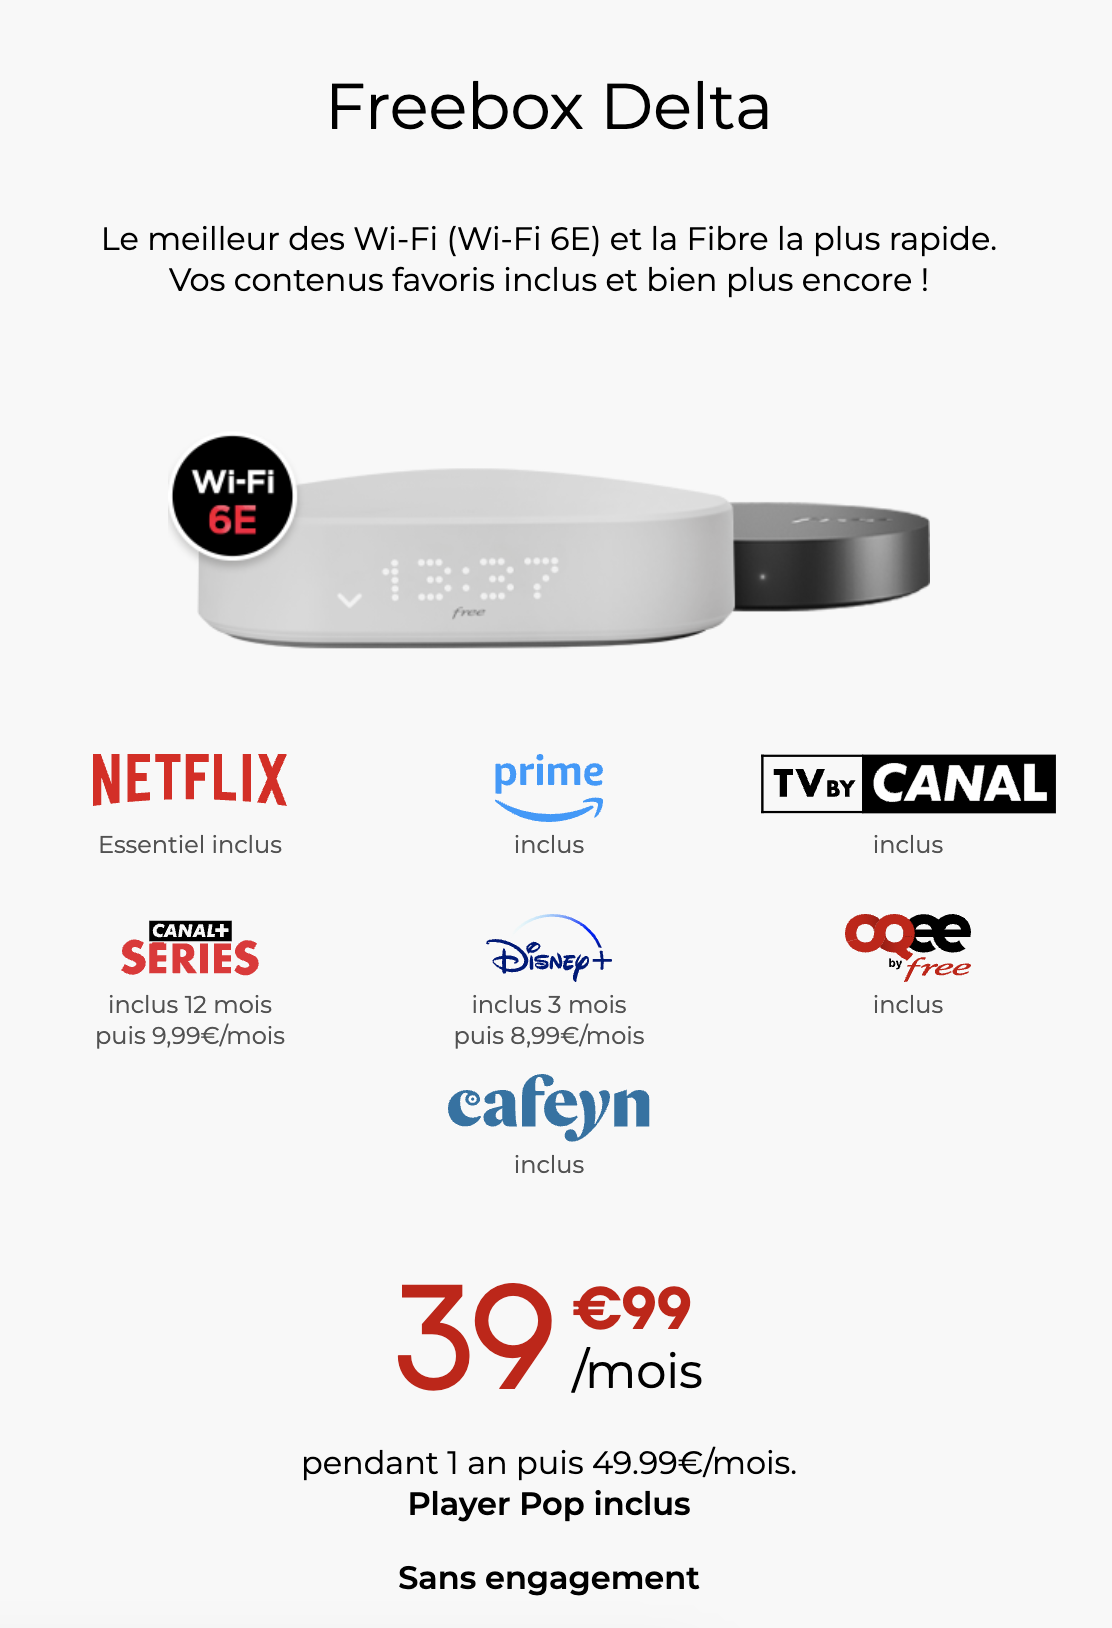 Offre Freebox Delta avec TV by Canal, Amazon Prime, Netflix Essentiel, OQEE by Free et Cafeyn inclus, Canal+ Séries offert pendant 1 an et Disney+ offert pendant 3 mois